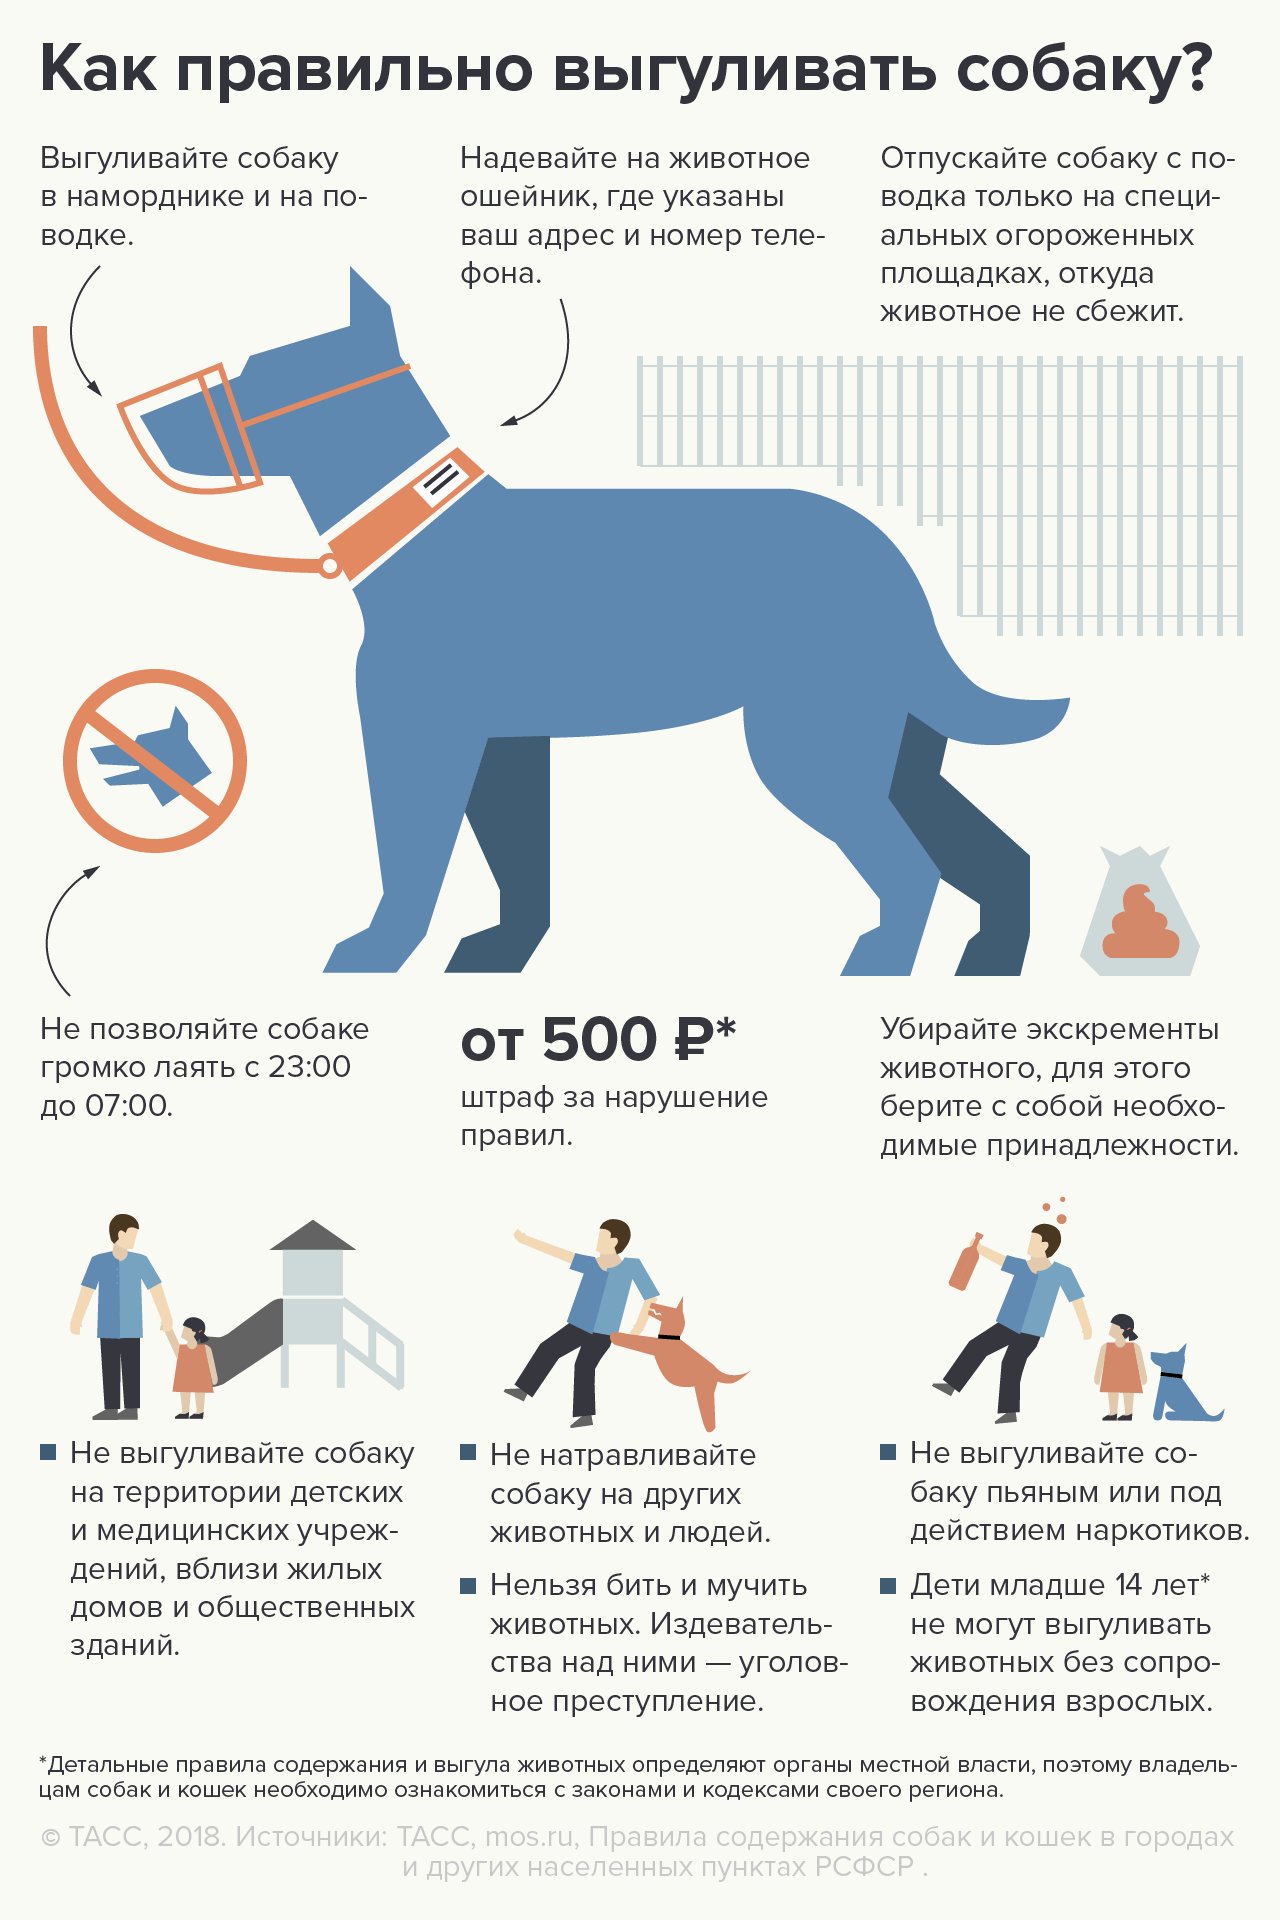 Закон о выгуле собак на 2020 год: запреты, штрафы, поправки